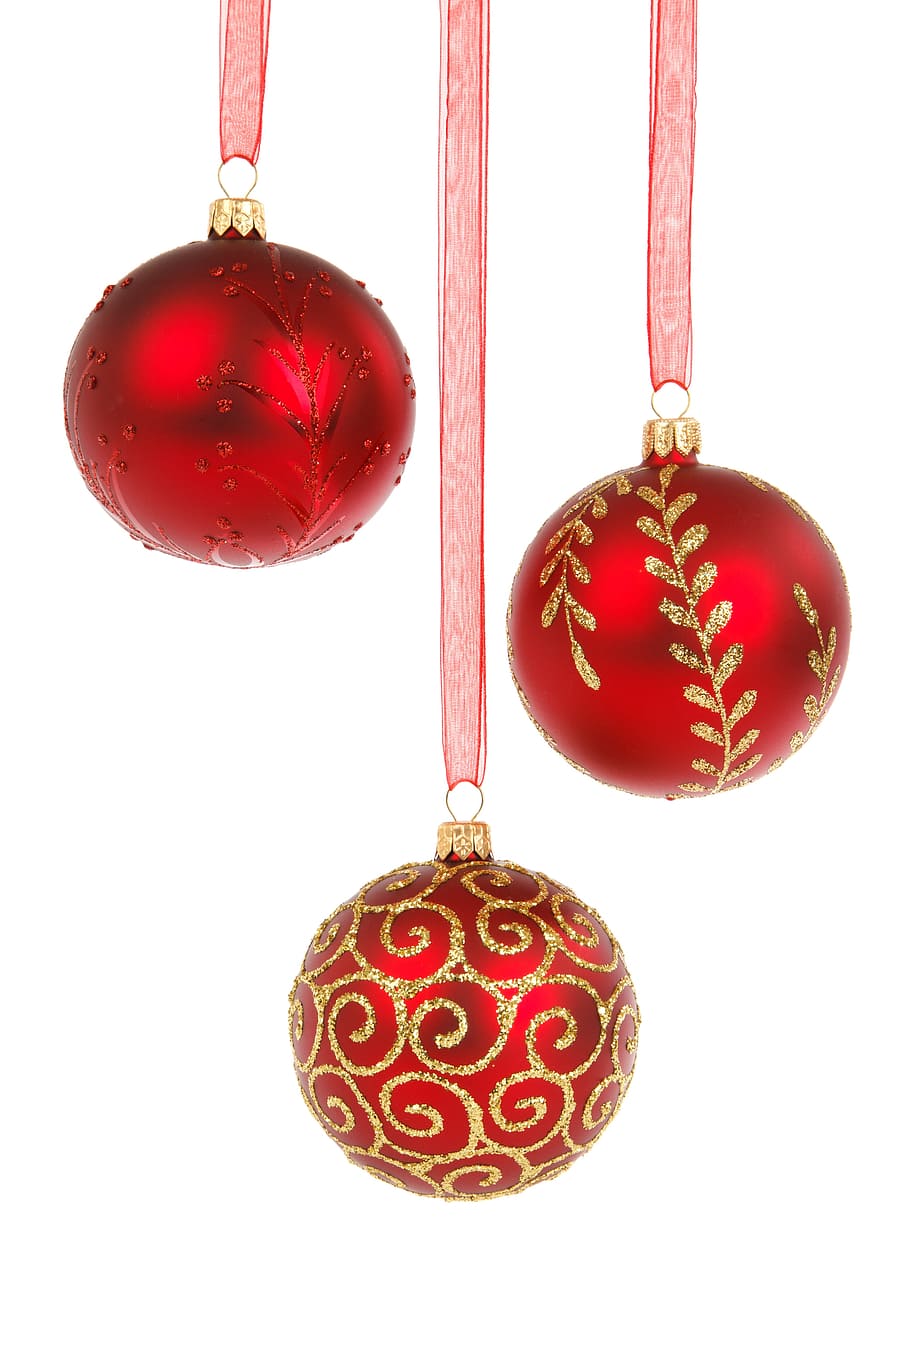 3つの赤いつまらないもの, ボール, 安物の宝石, お祝い, クリスマス, 12月, 装飾, ガラス, ぶら下げ, 休日